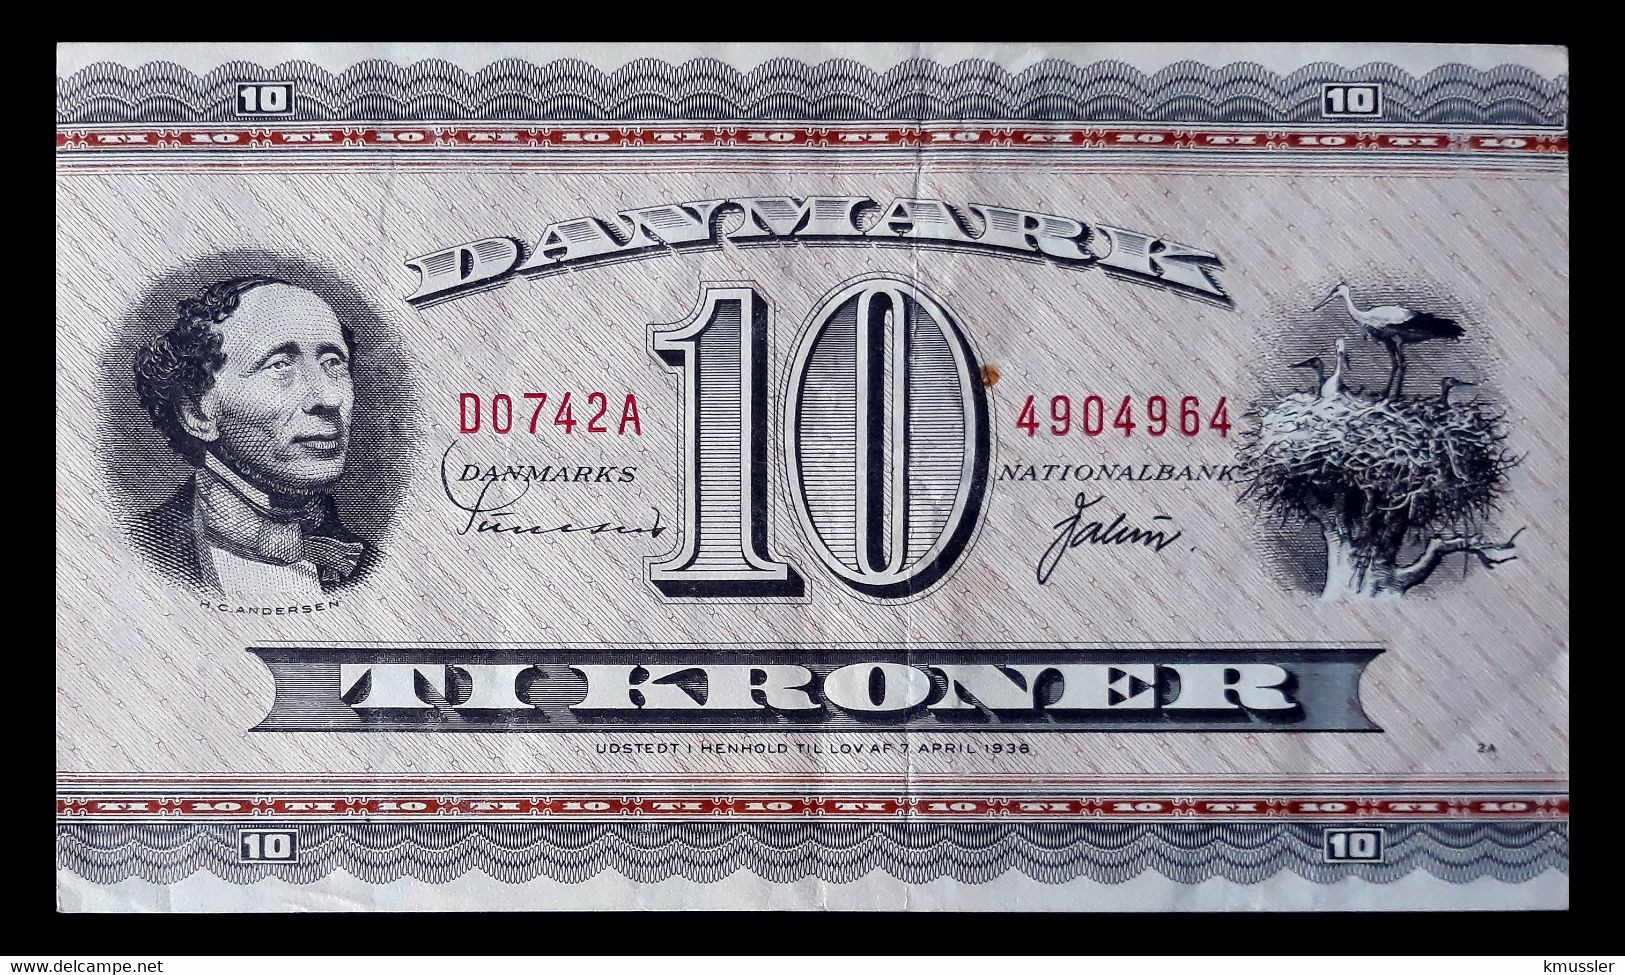 # # # Banknote Dänemark (Denmark) 10 Kroner 1936 # # # - Dänemark